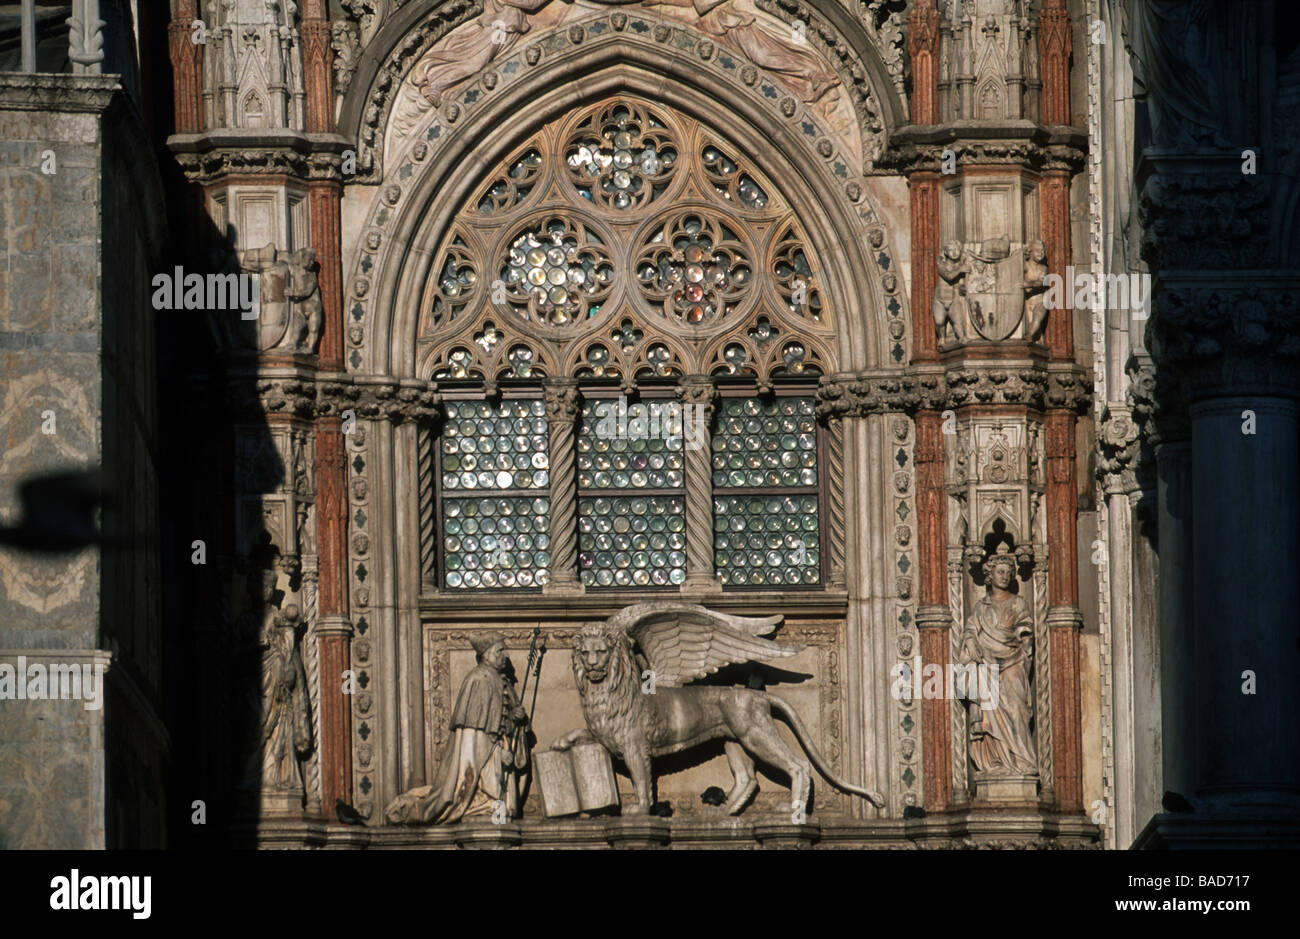 Italien, Venedig, Stadtteil San Marco, Palazzo Ducale, gotisches Maßwerkfenster über der porta della carta Foto Stock